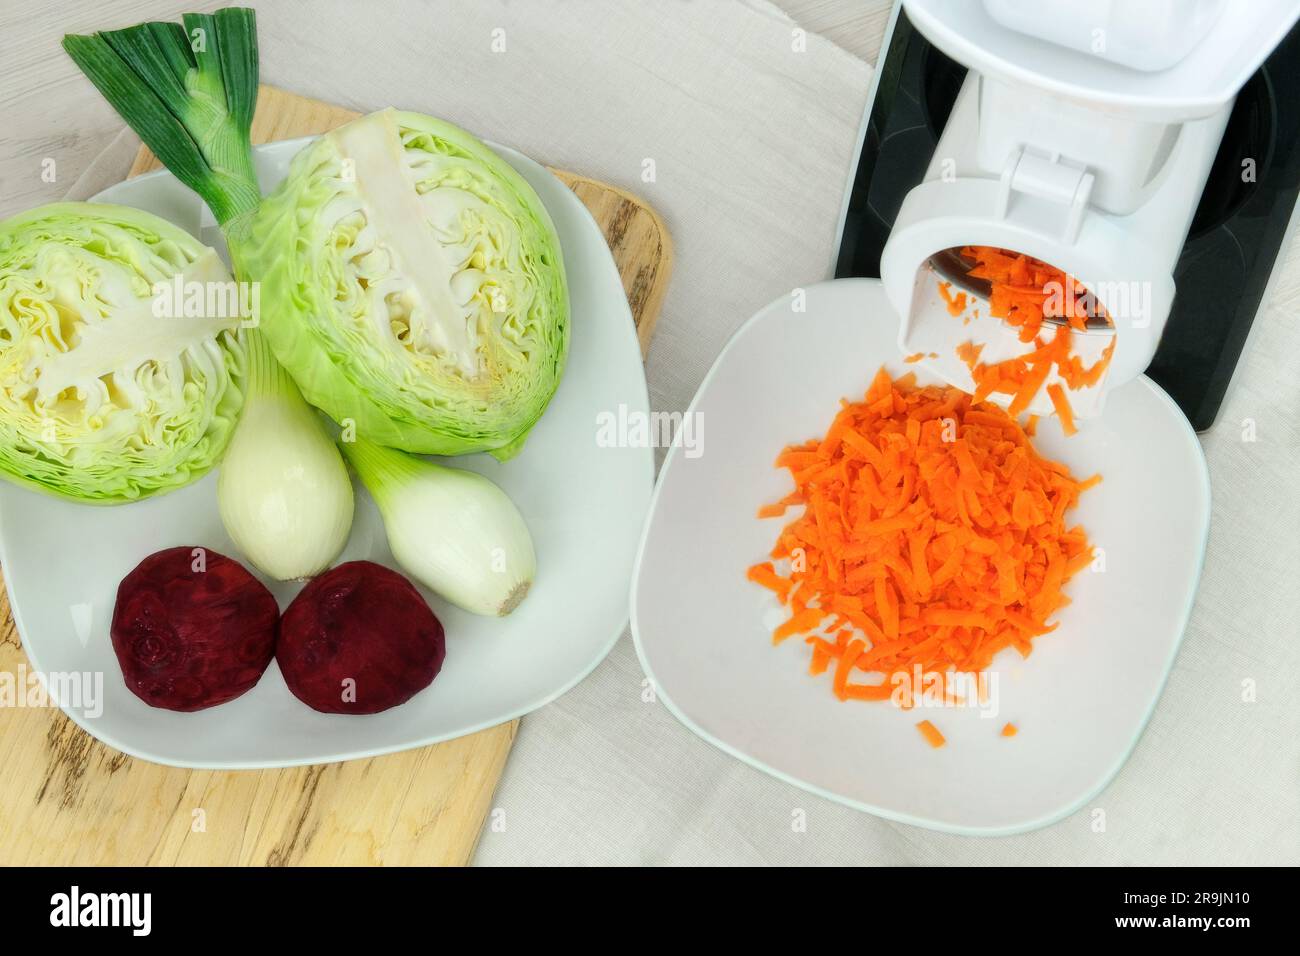 Picador De Cebolla Y Verduras En Cuadros